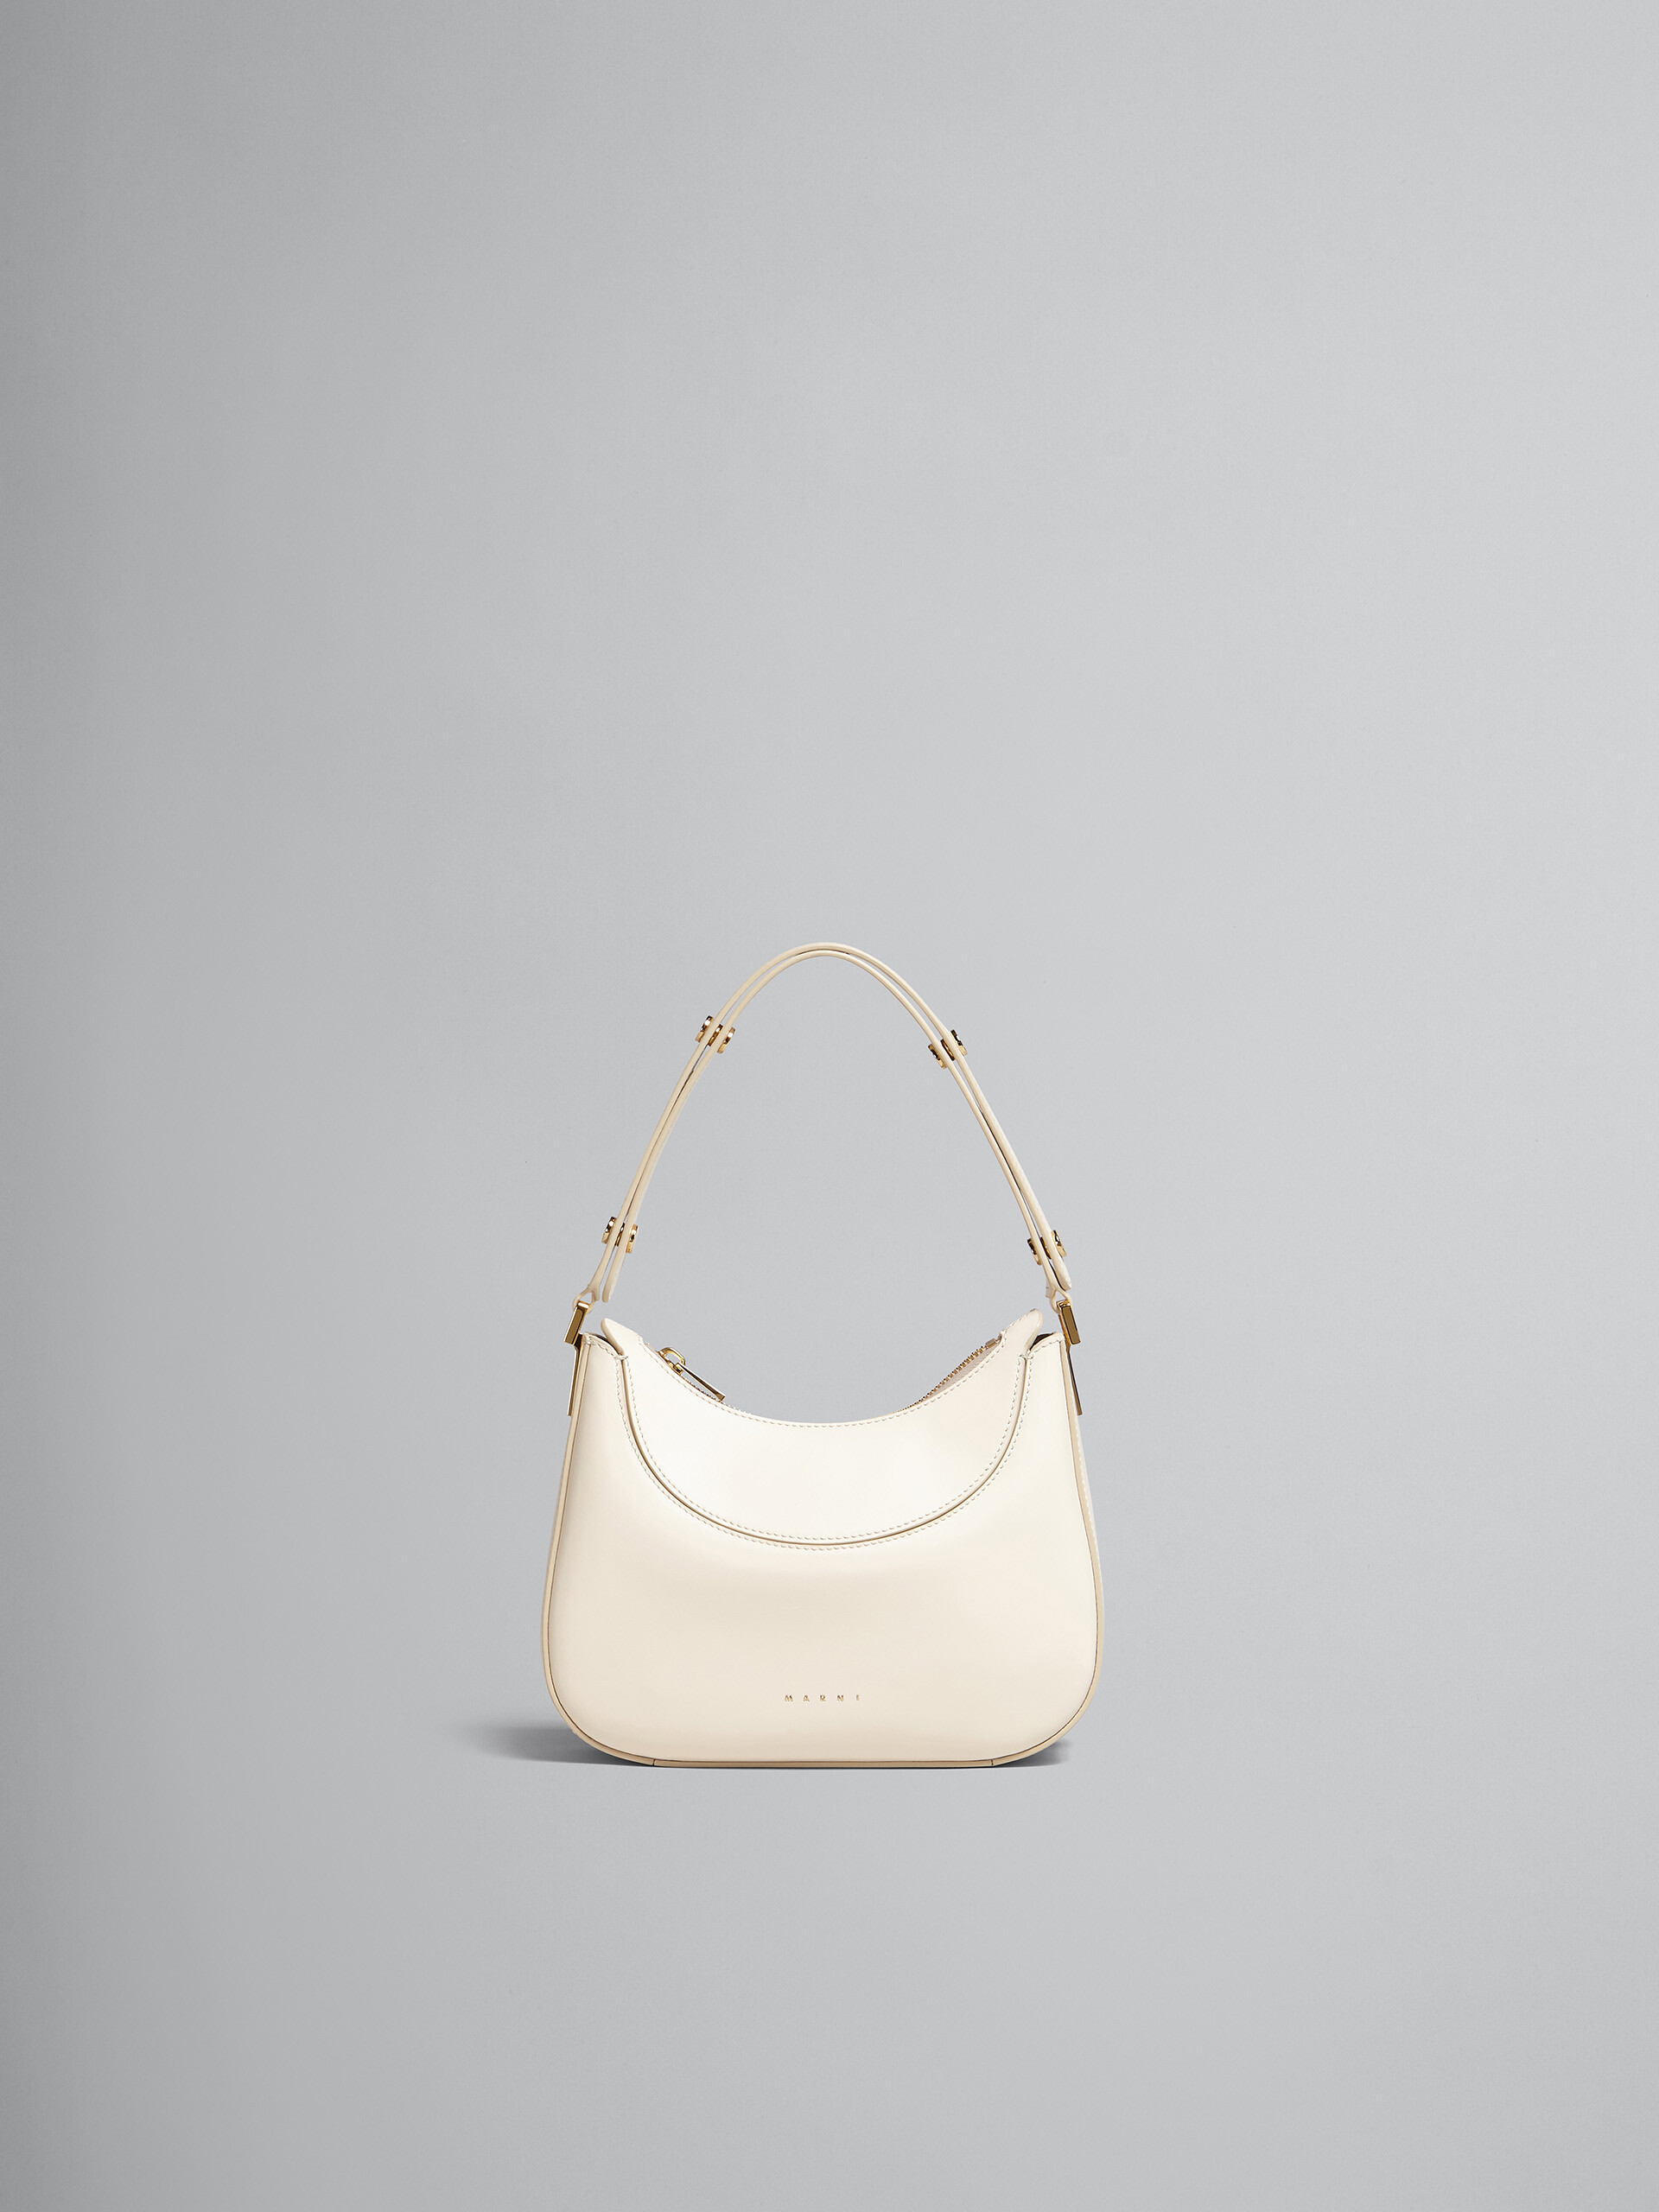 Milano mini bag in white leather - Handbag - Image 1